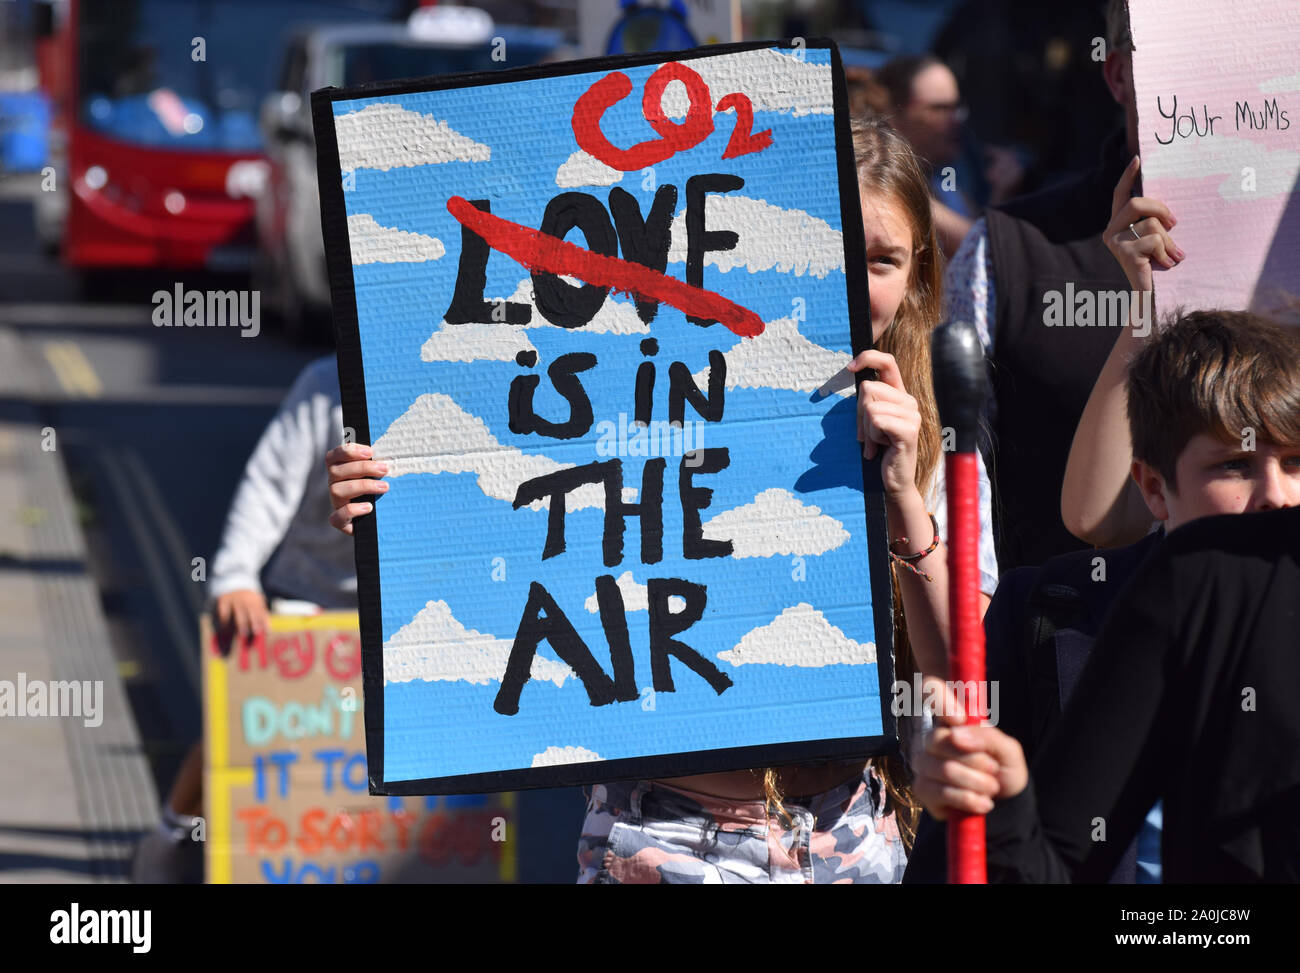 Junge Mädchen protestieren gegen climat Change in Großbritannien halten ein Banner mit der Aufschrift "CO2 ist in der Luft" mit dem Wort "Liebe" durchgestrichen Stockfoto